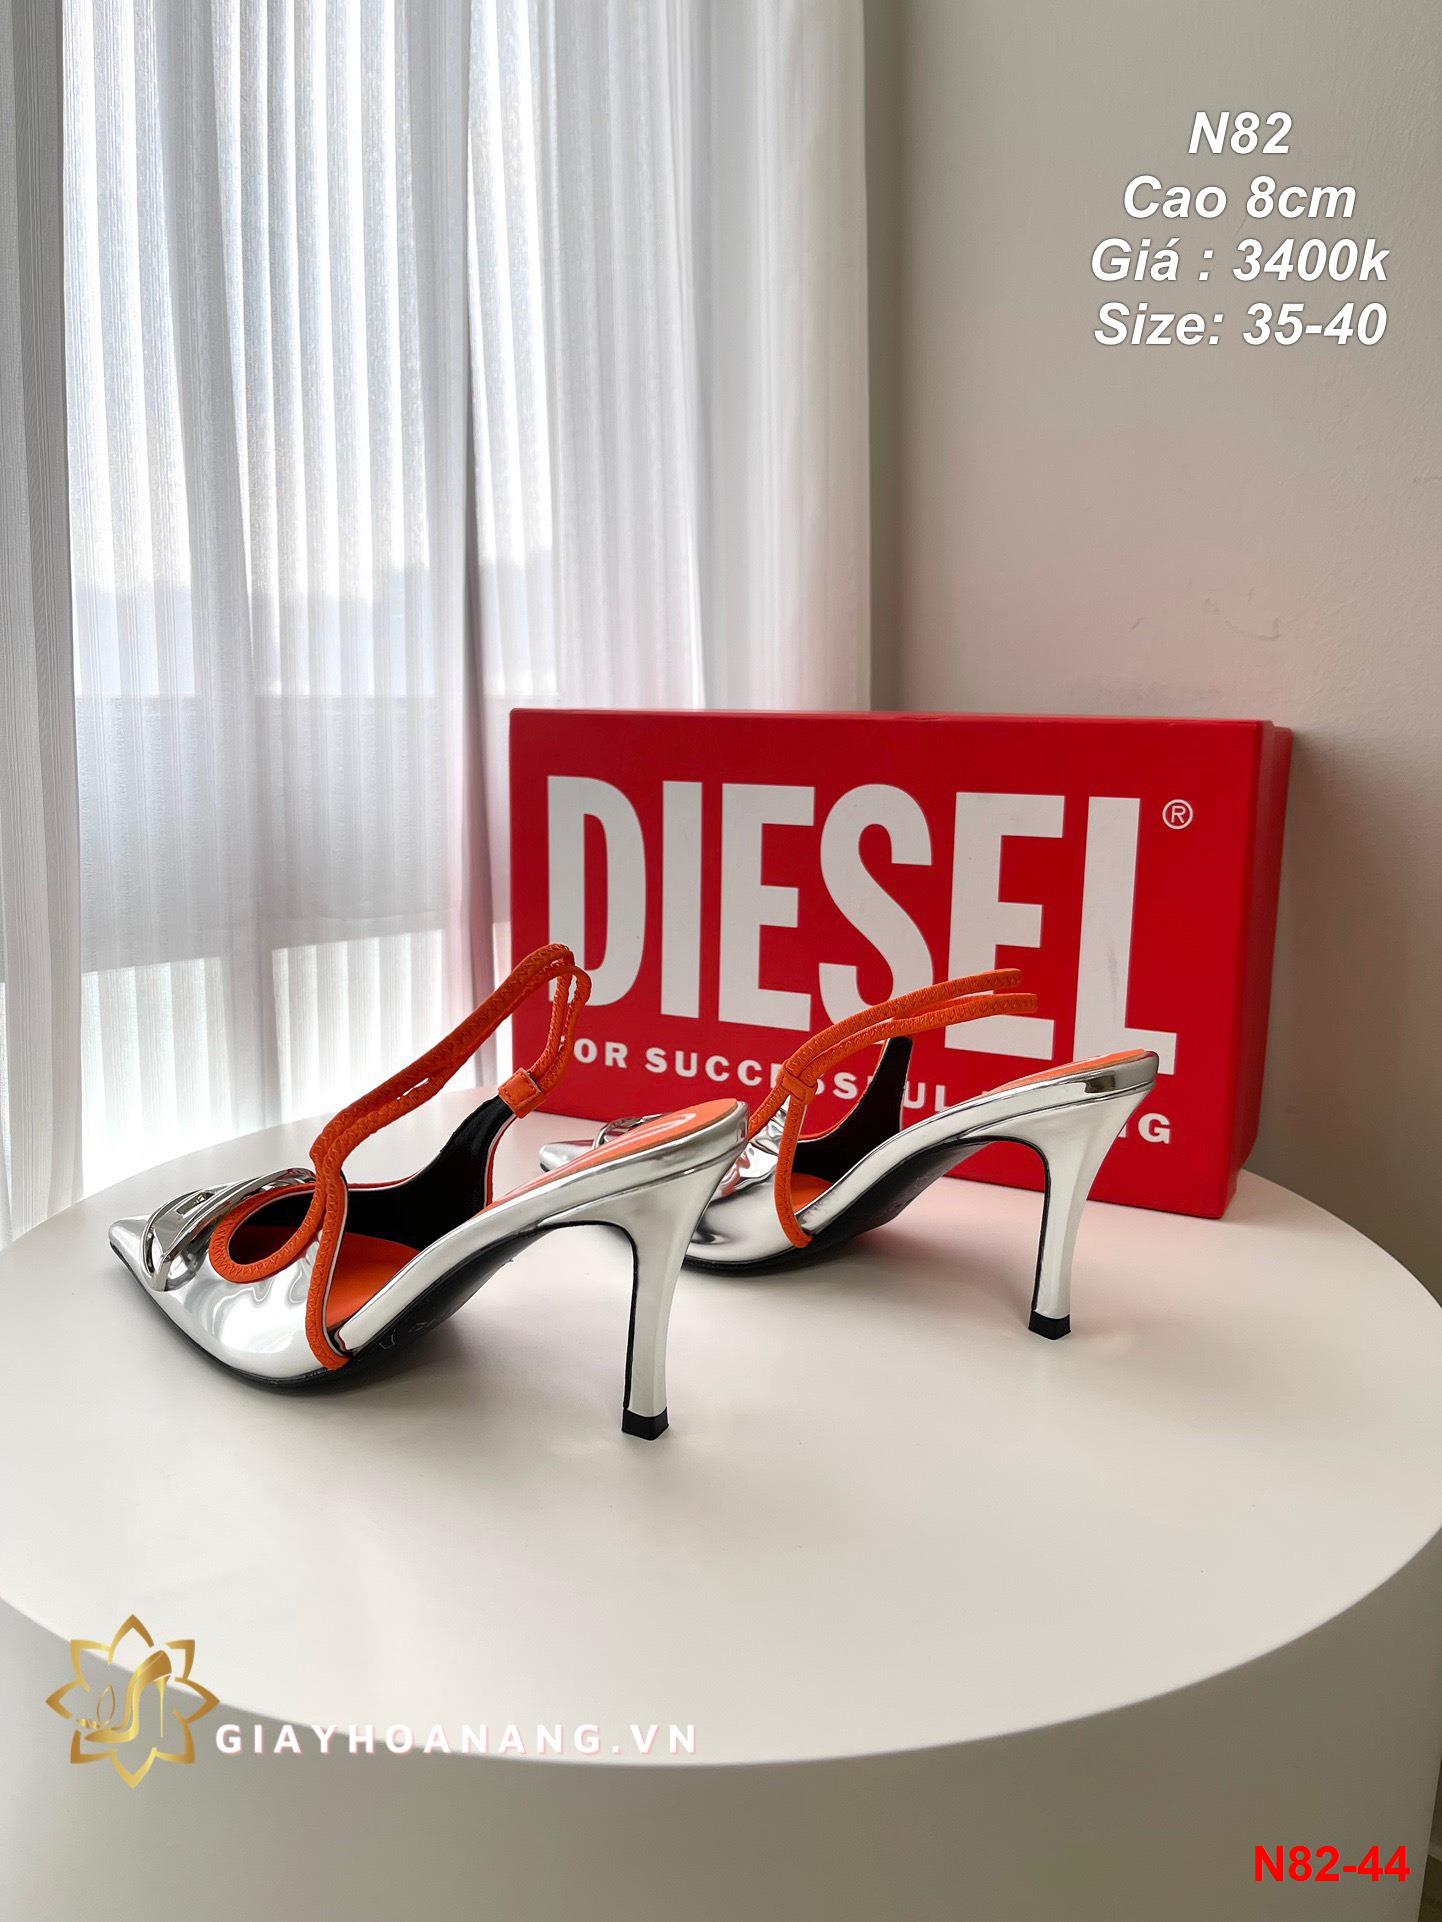 N82-44 Diesel sandal cao 8cm siêu cấp